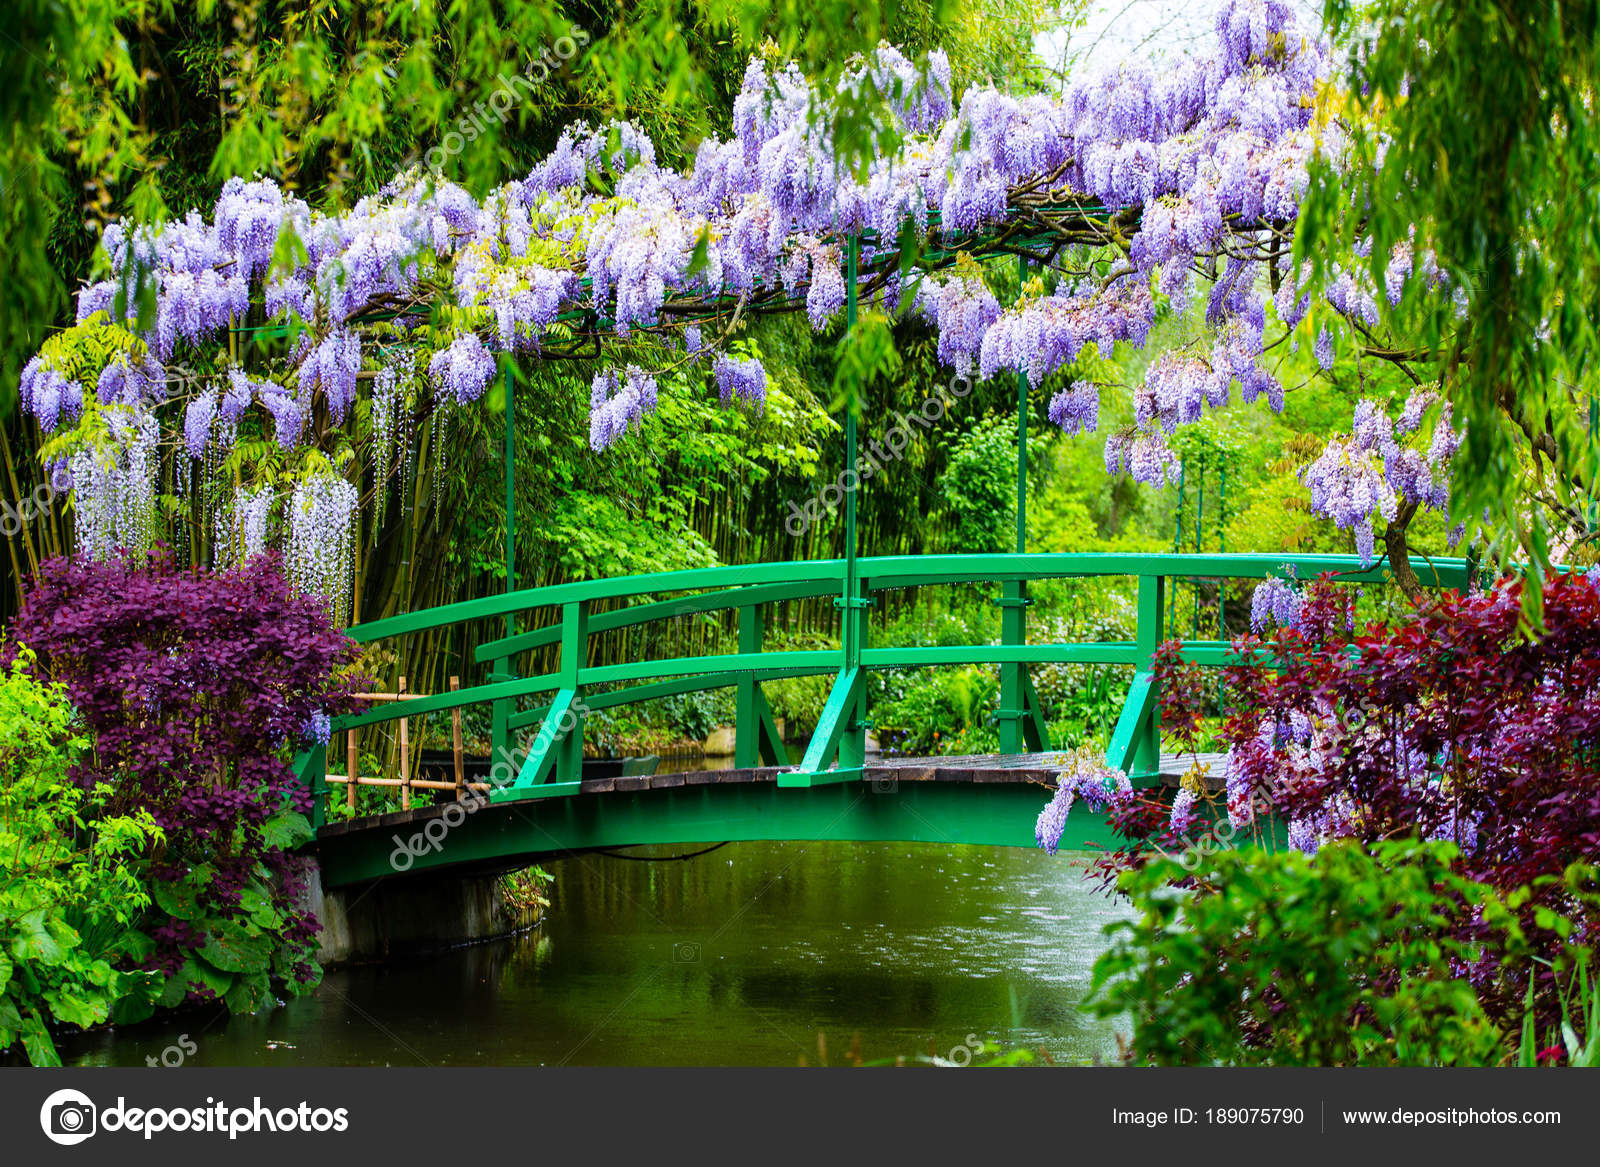 Claude Monet Giverny Garden